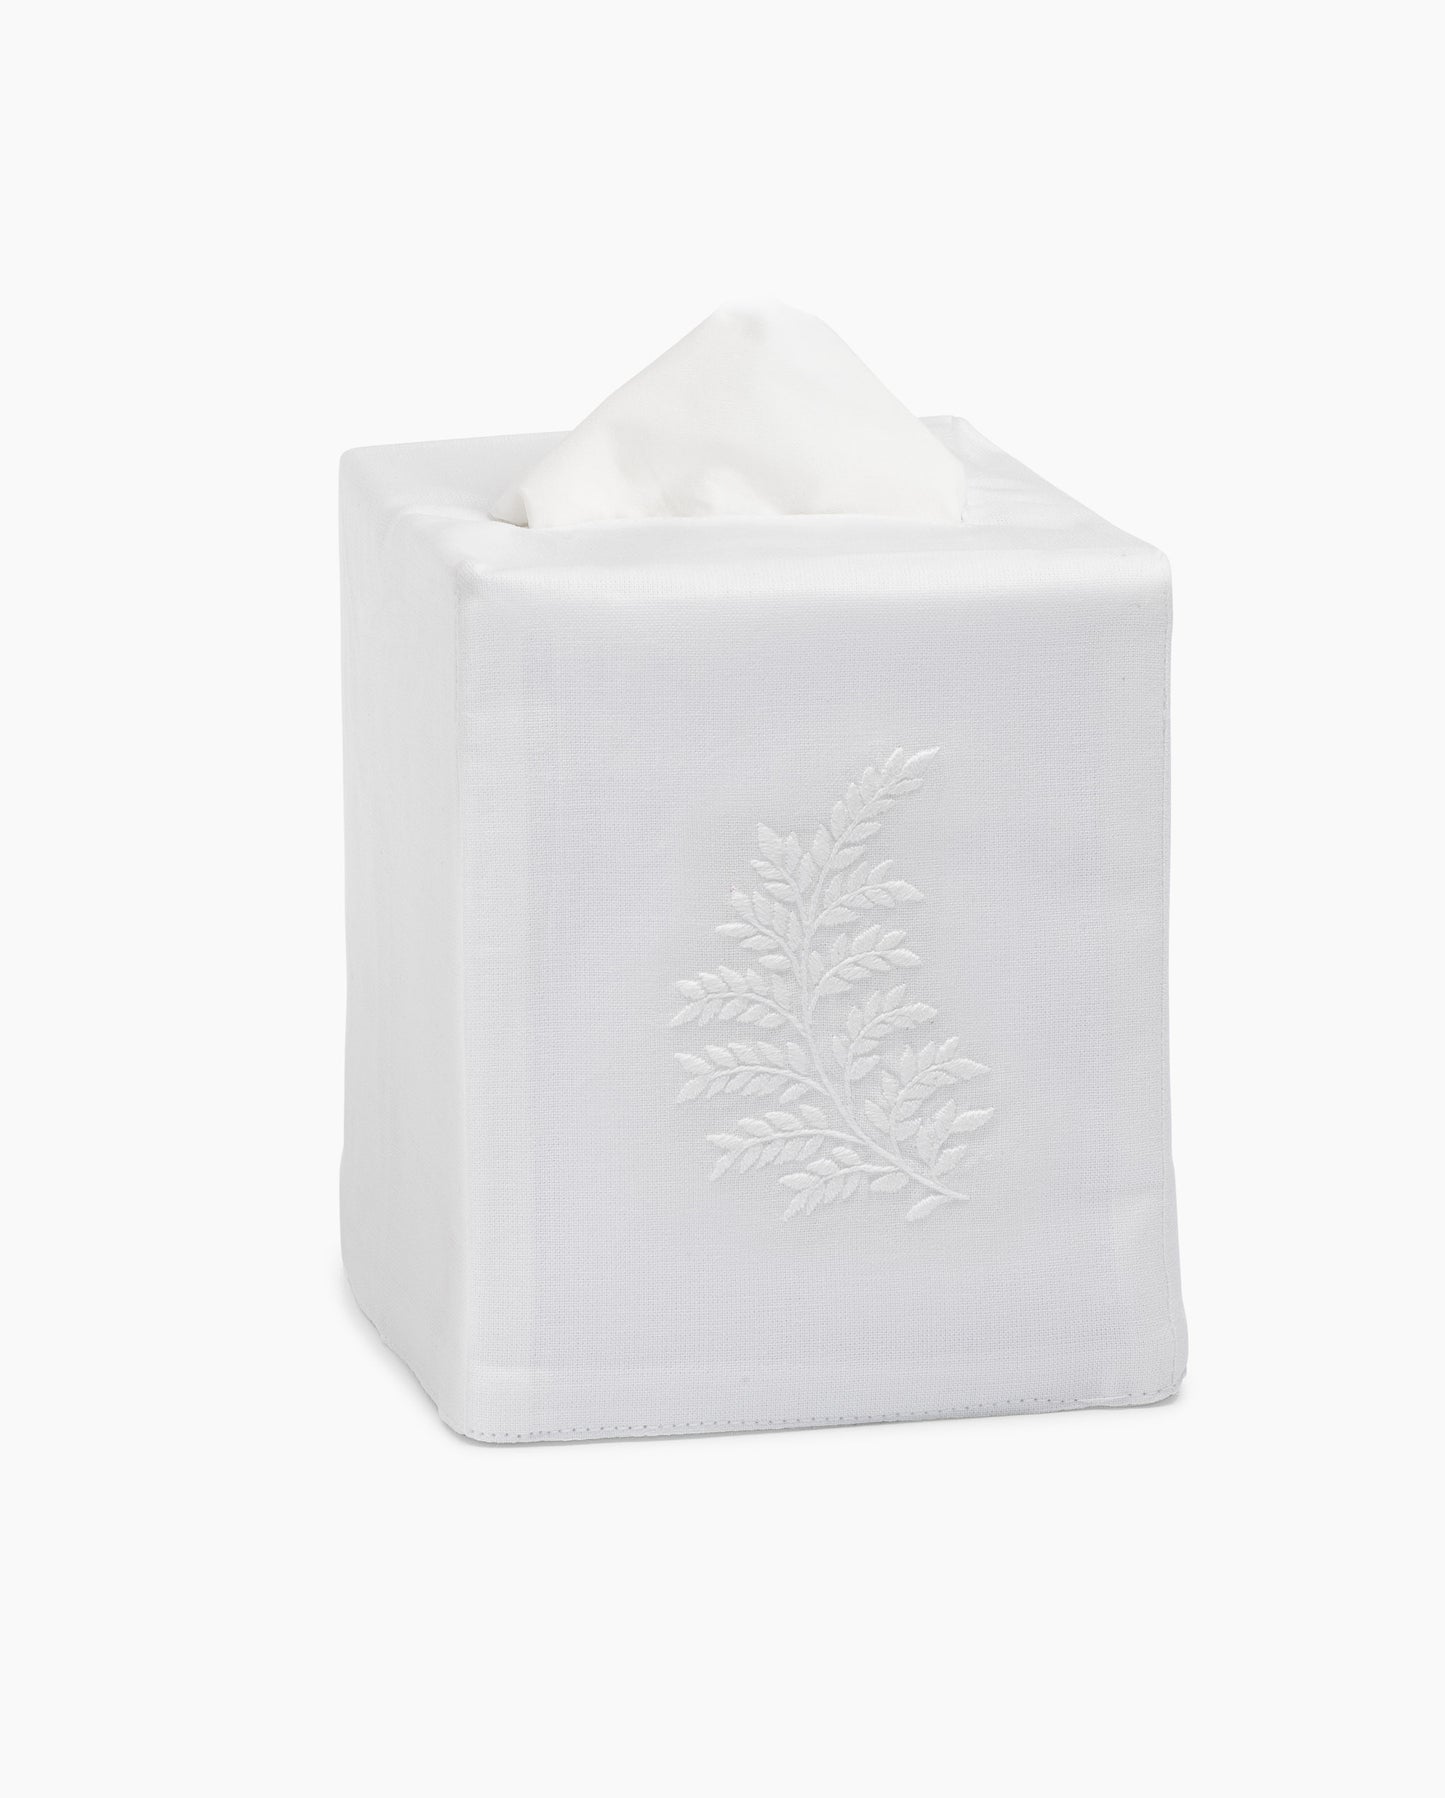 Leaves White Tissue Box Cover